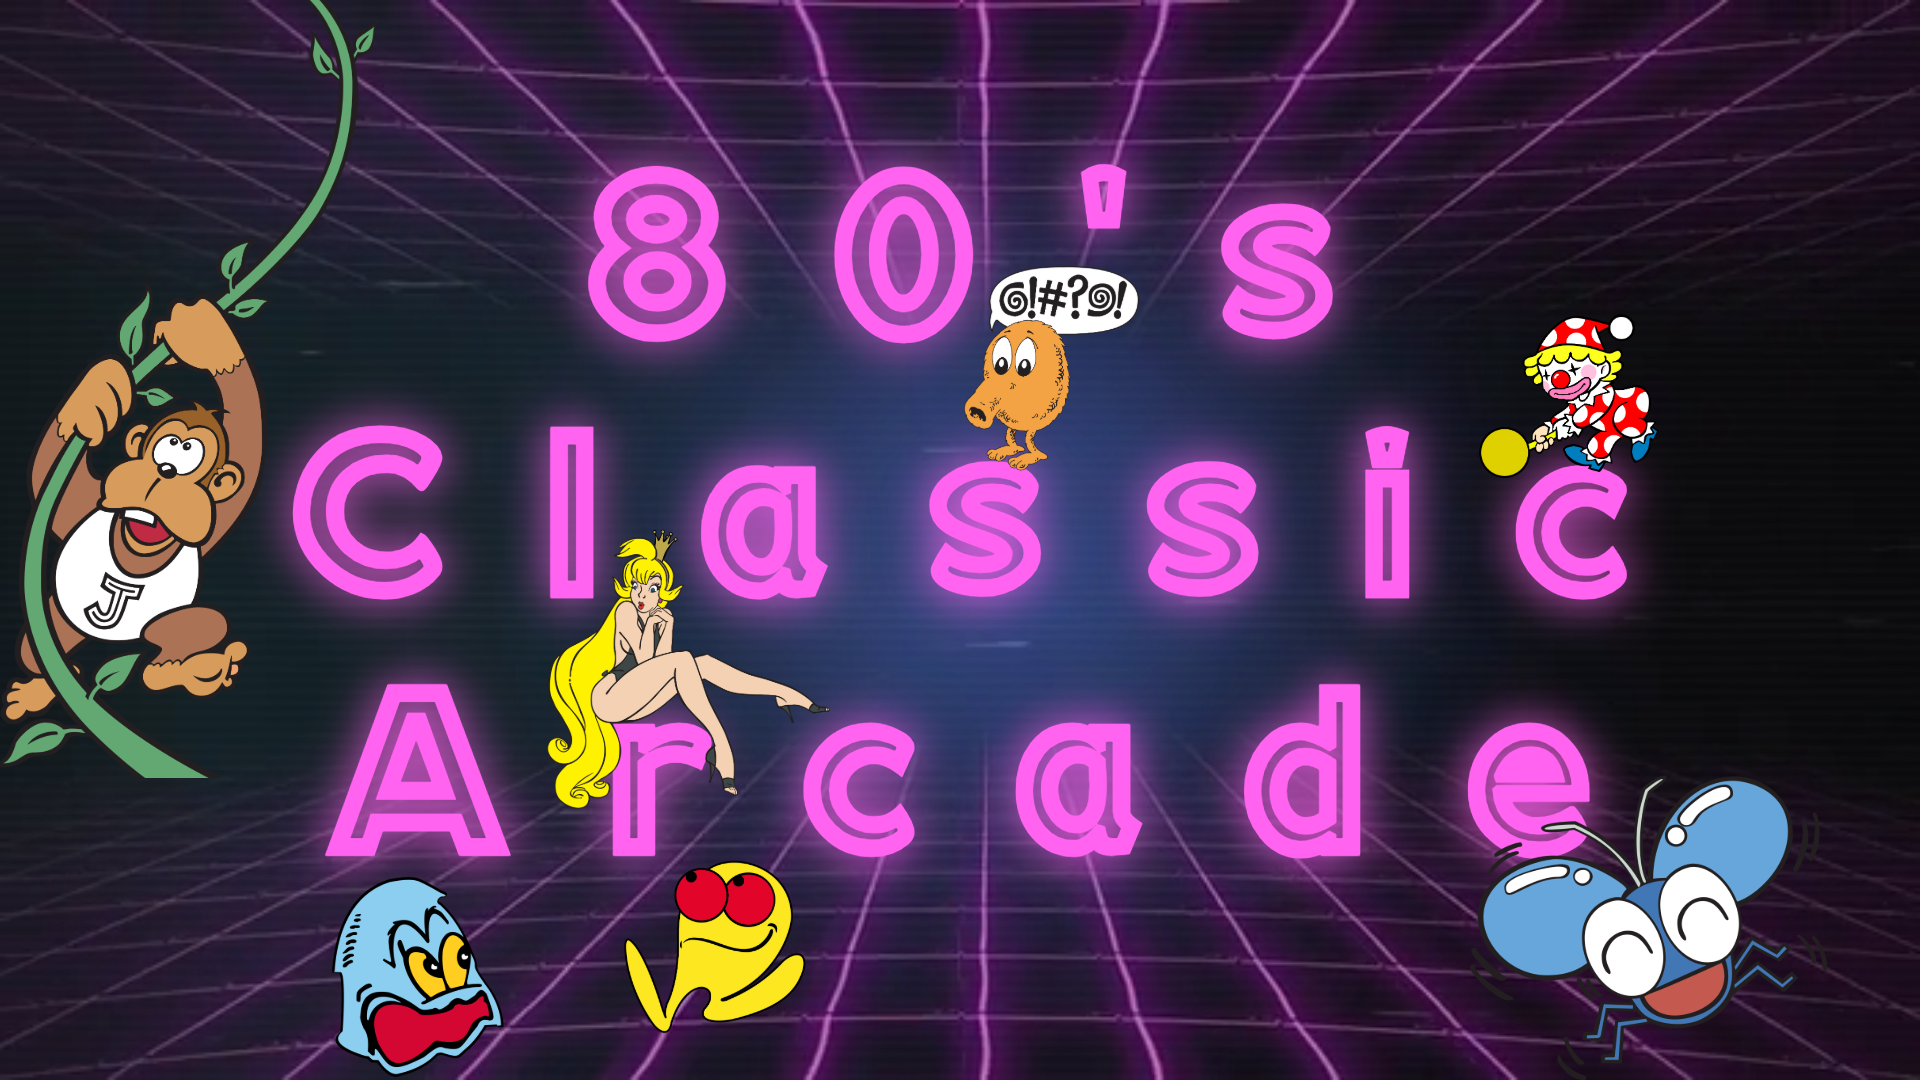 80’s Classic Arcade